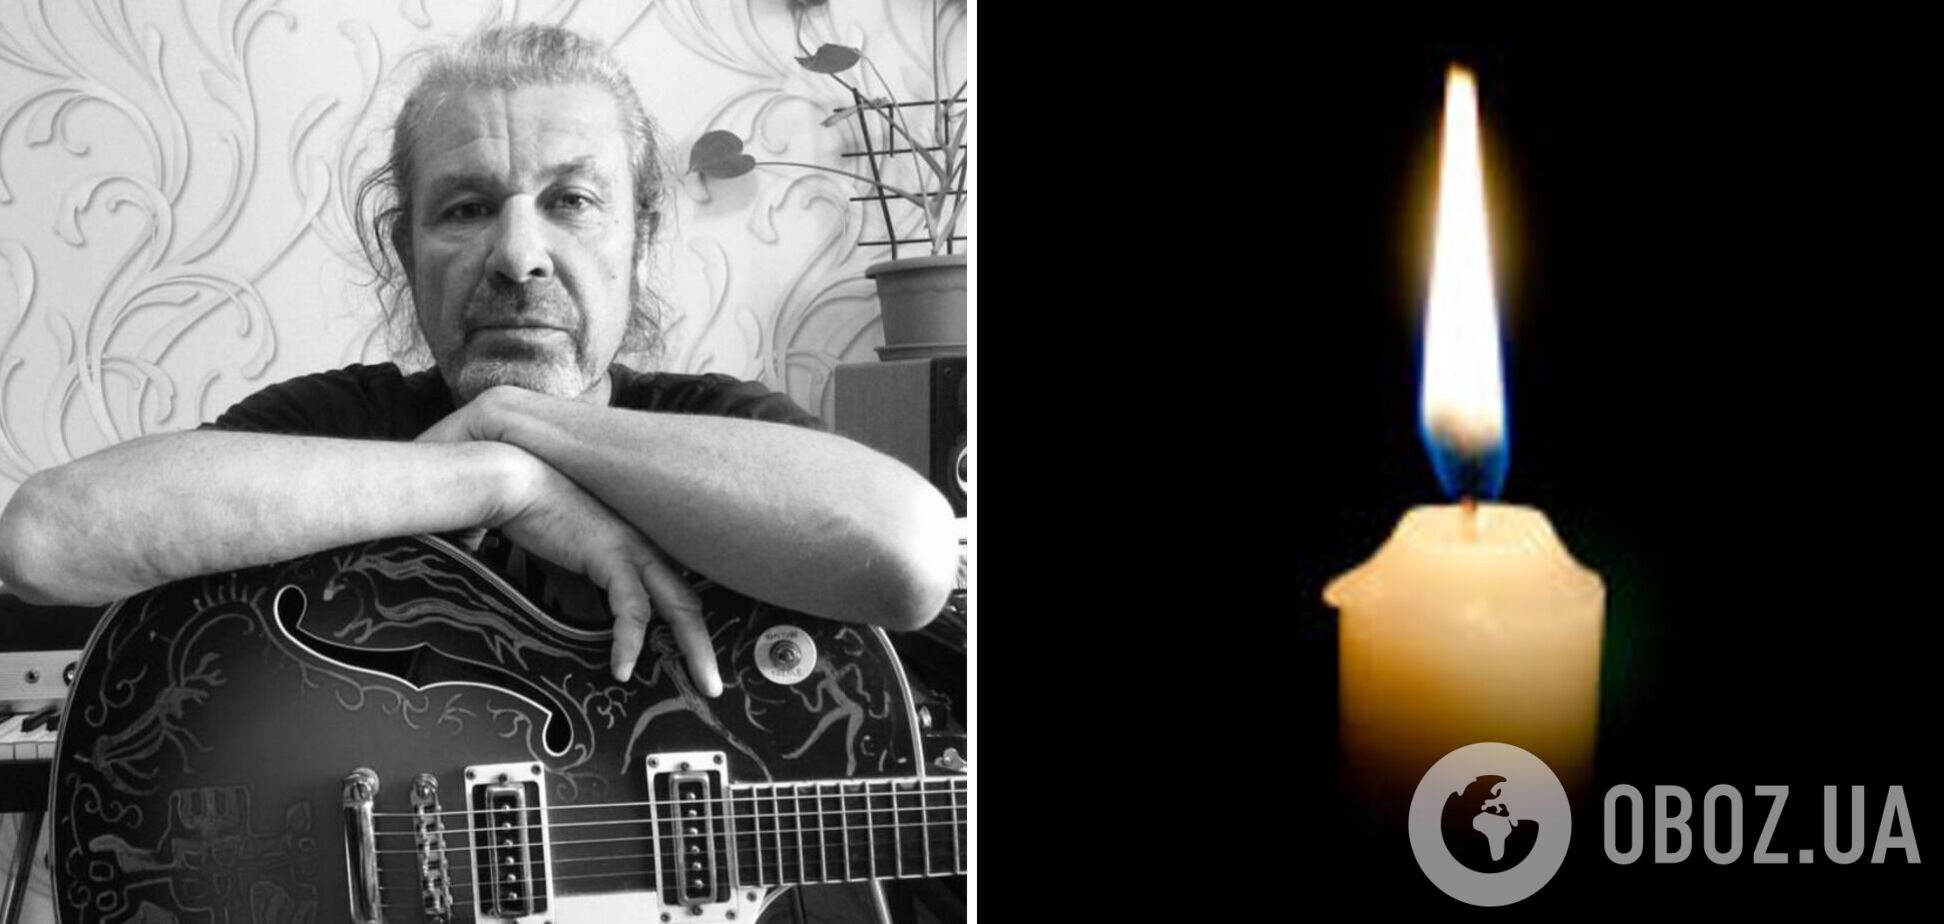 Нашли под завалами в Умани: погиб украинский музыкант, который писал песни для Джамалы. Фото